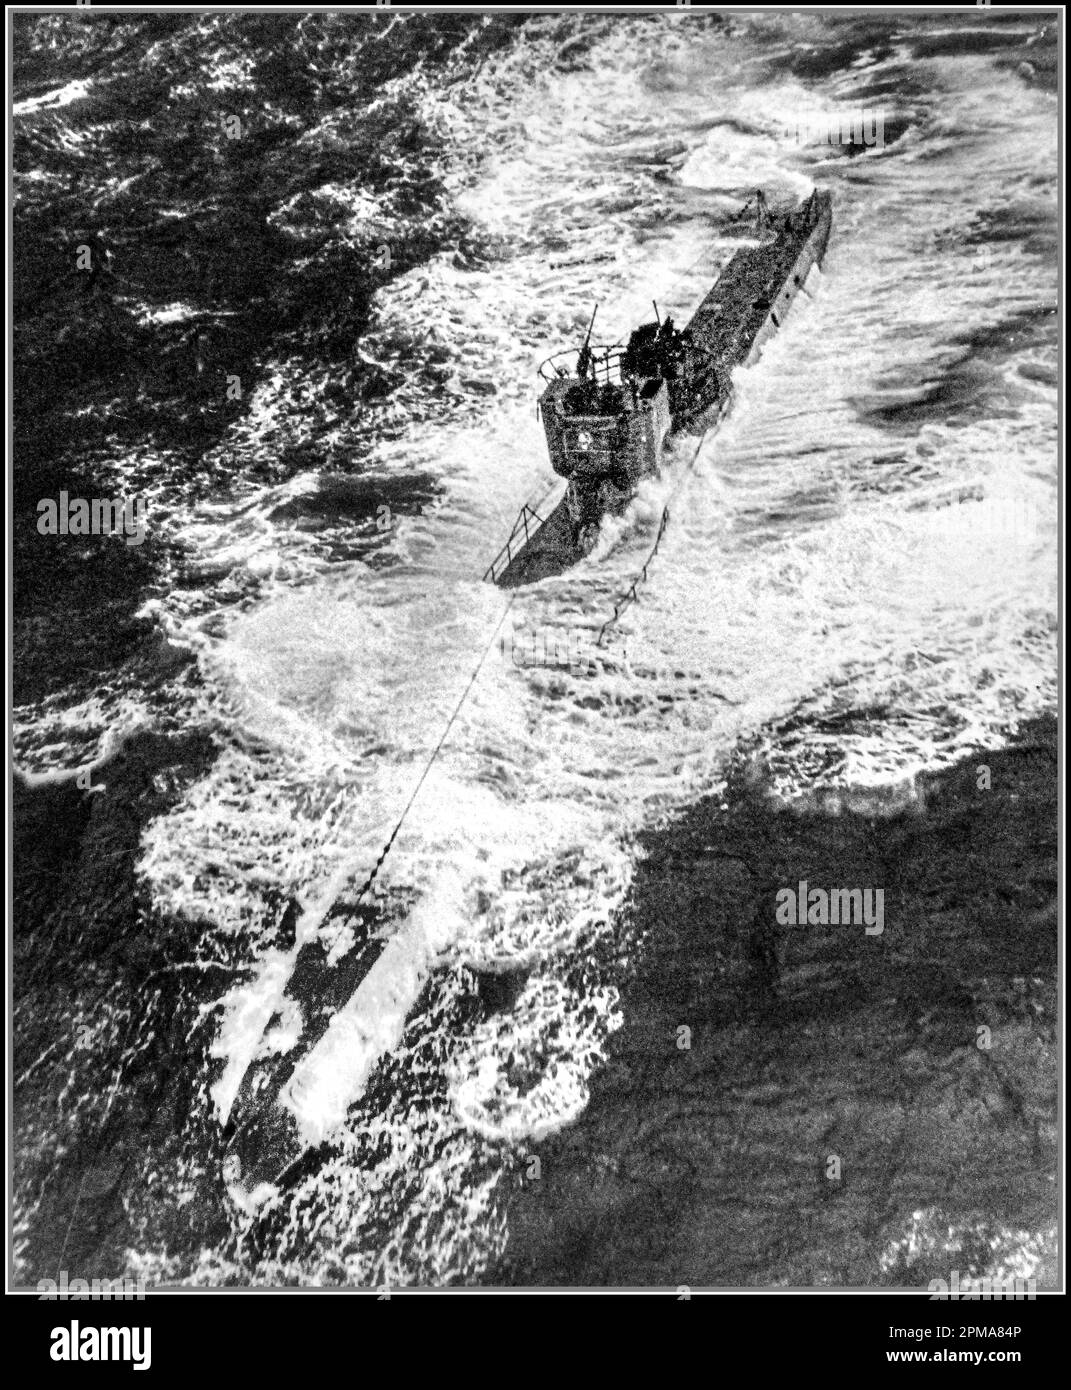 WW2 Angriff auf deutsche U-Boote, 1943. Luftangriff auf U-378, Vorfall Nr. 4786, 20. Oktober 1943. Das U-Boot wurde von einem Fido-Torpedo und Tiefenladungen von Avenger- und Wildcat-Flugzeugen des Verbundgeschwaders Thirteen (VC-13), basierend auf USS Core (CVE-13), gesunken. Zweiter Weltkrieg Mittelatlantik Stockfoto